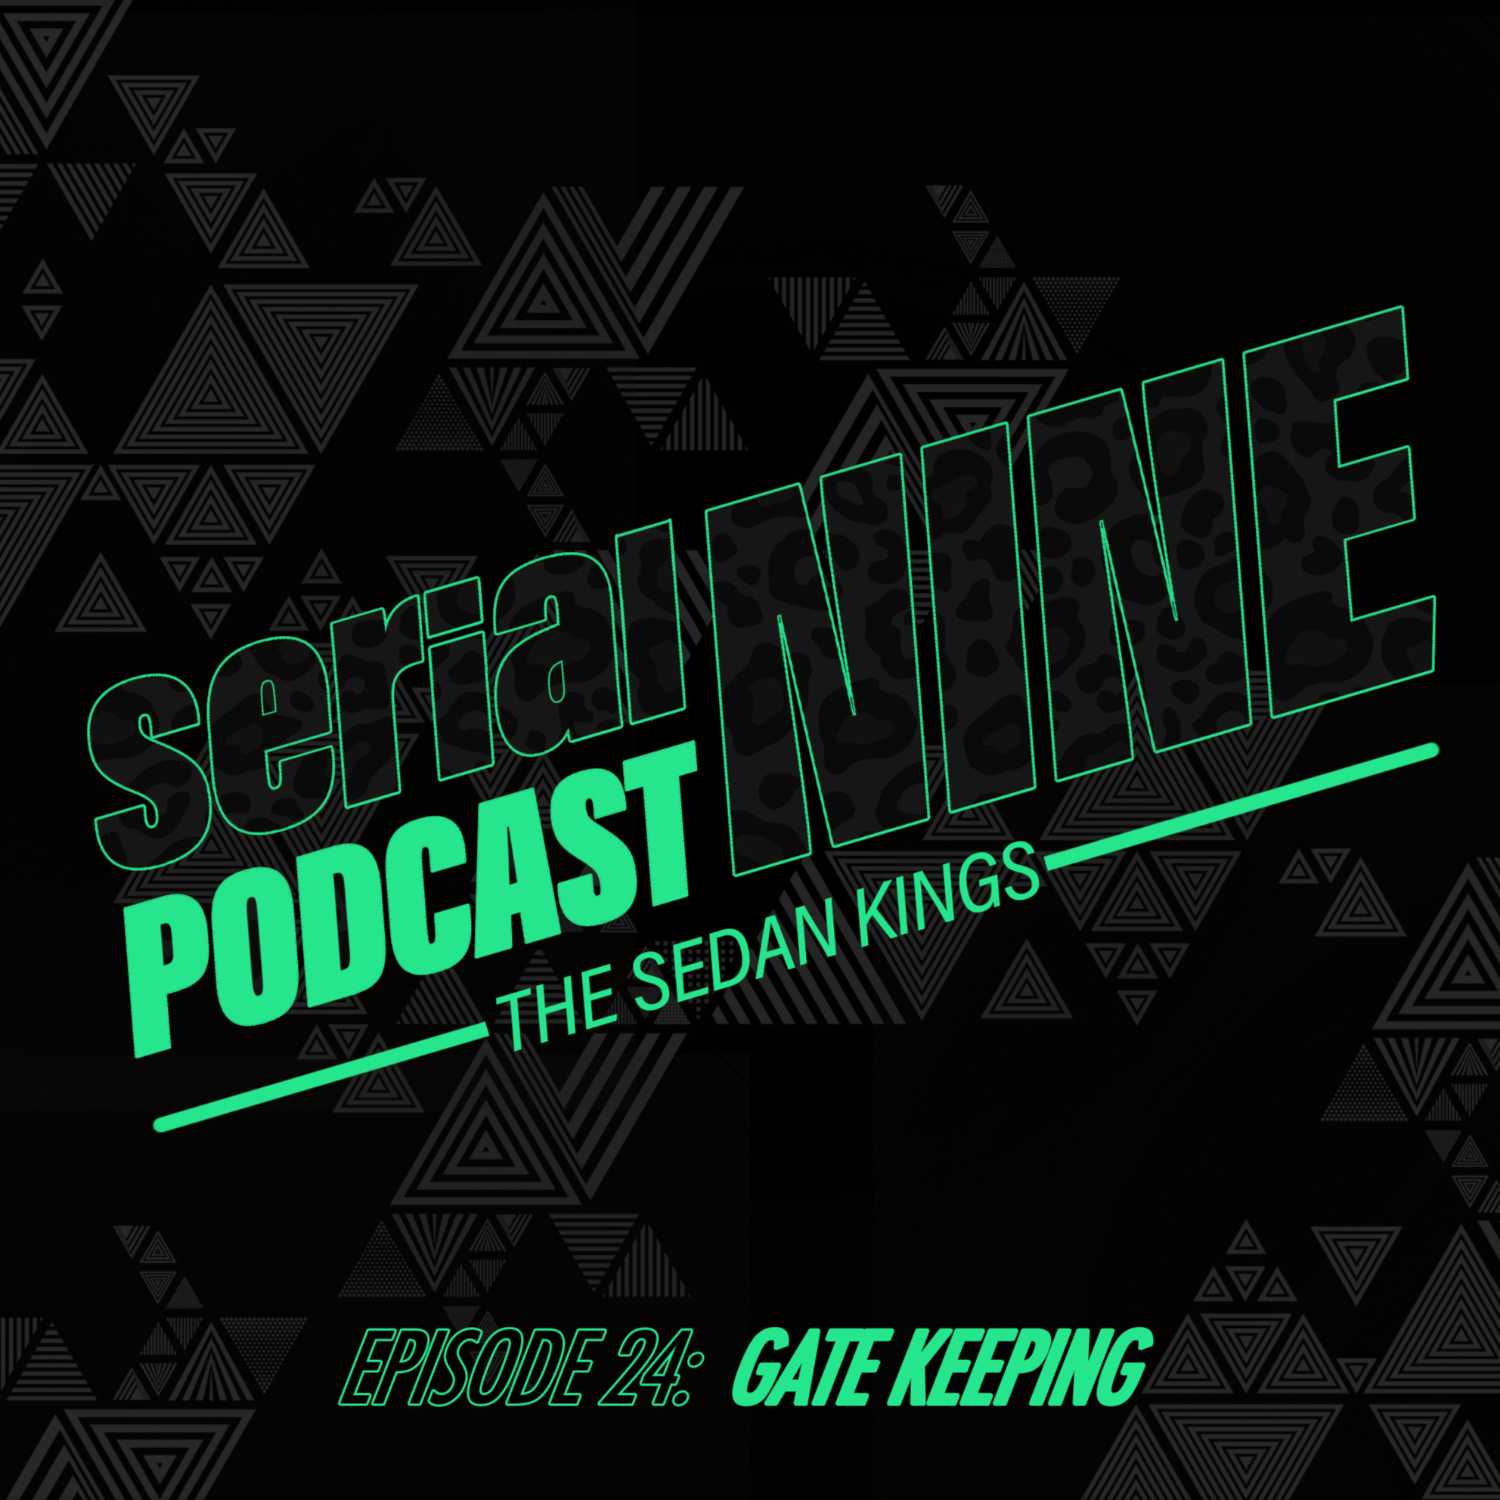 SerialPodcastNine Episode 24 Gate Keeping